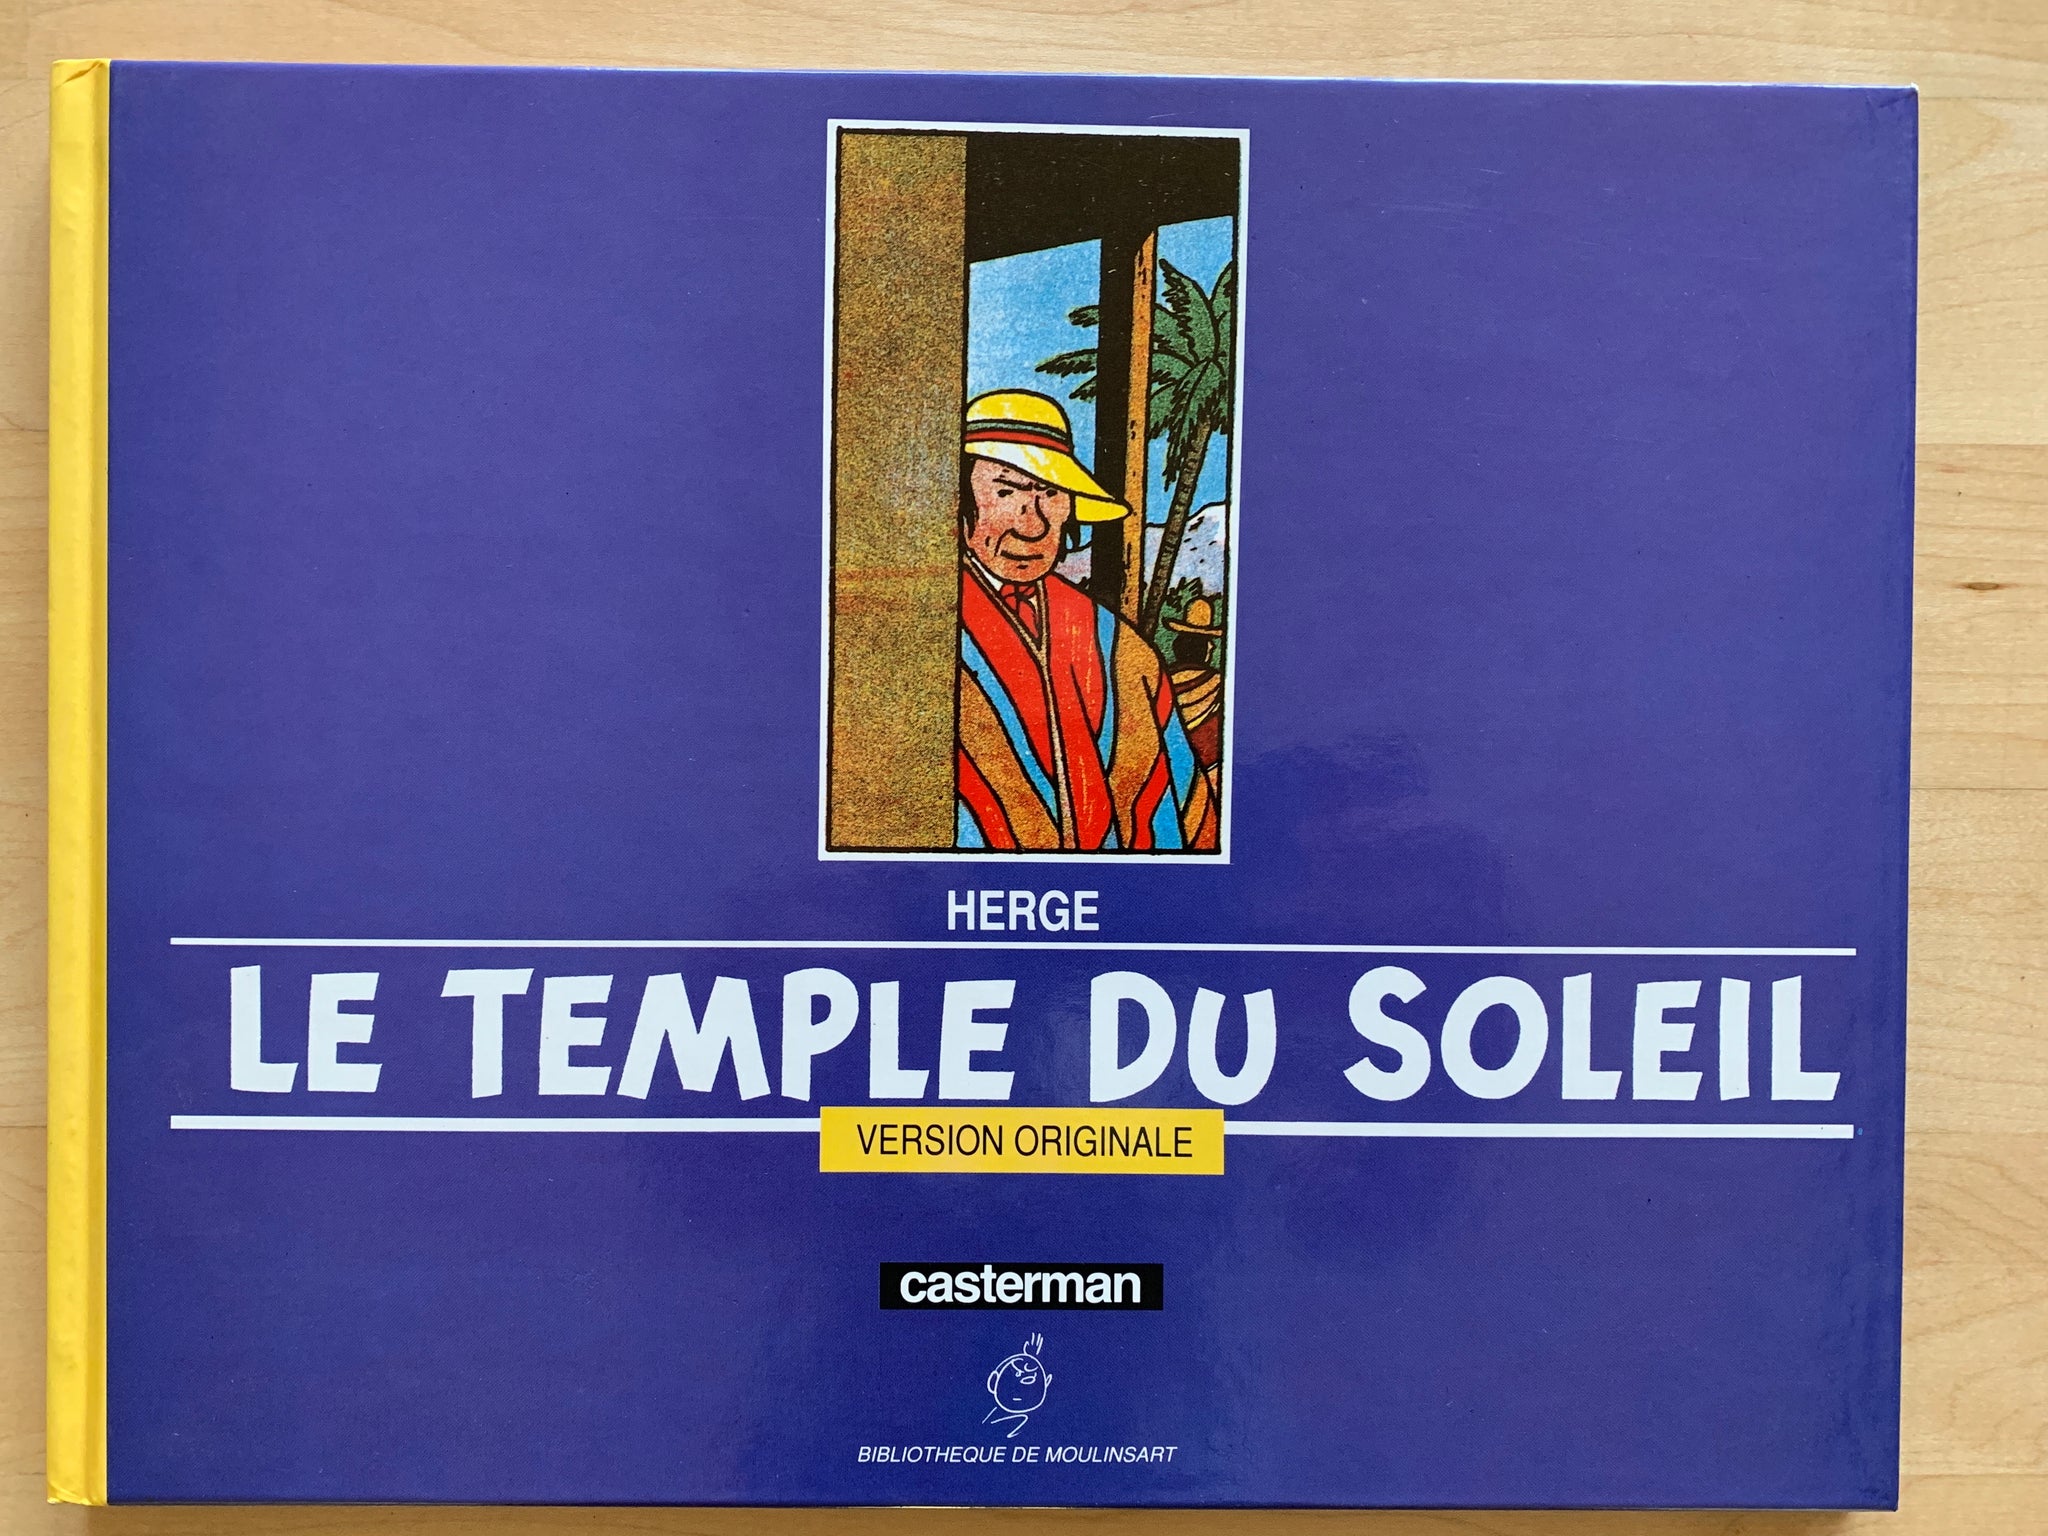 Volume bearing the title Le Trésor des Trésors (The Treasure of